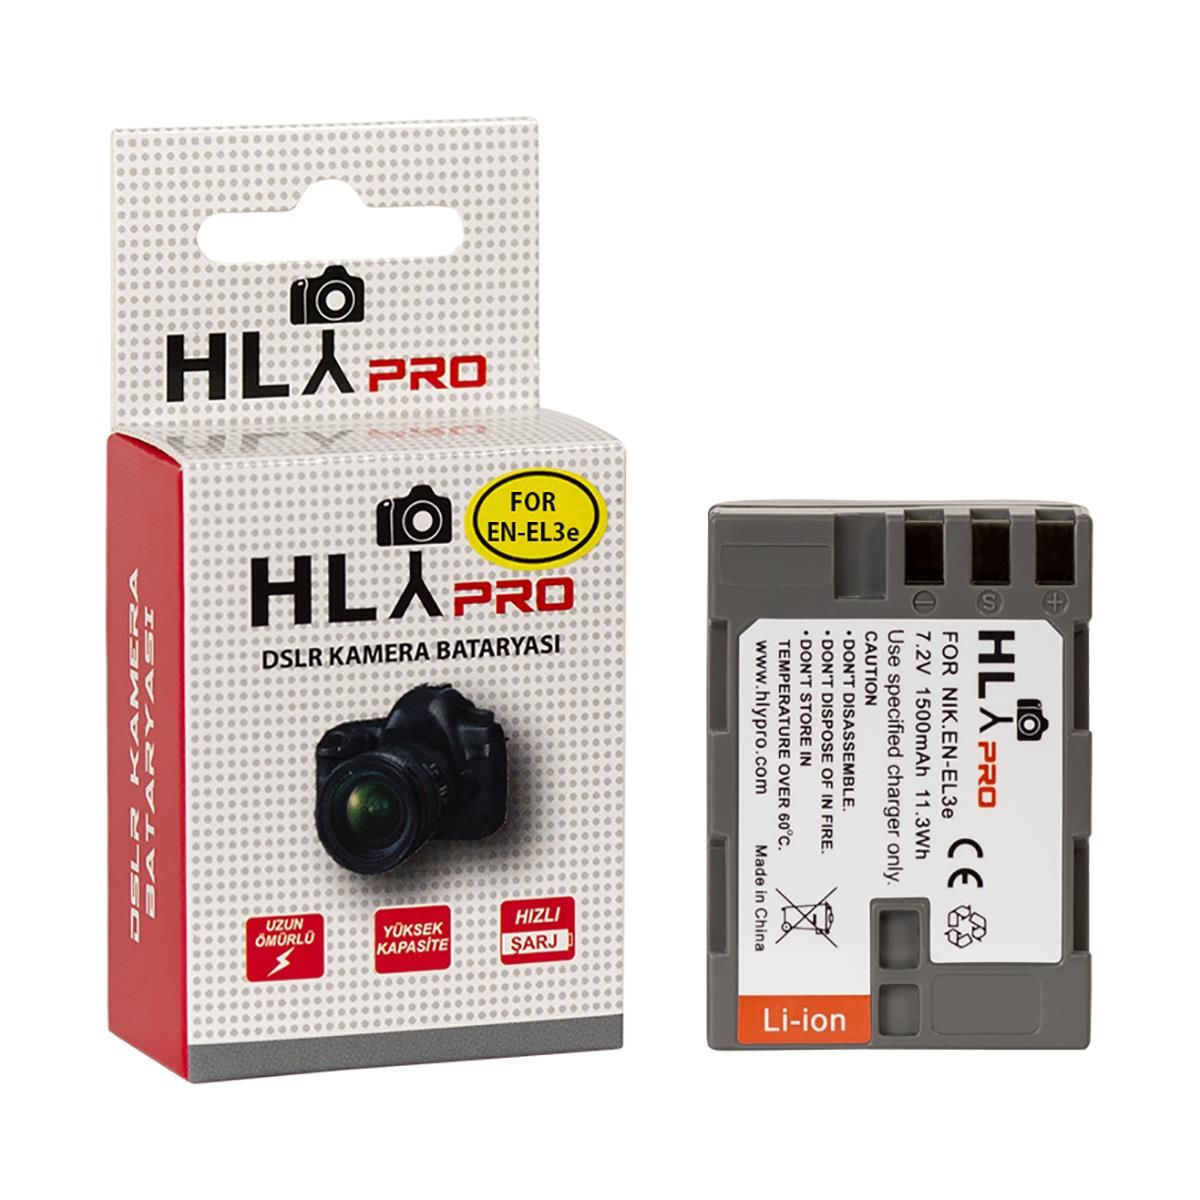 Hlypro Nikon D50 İçin EN-EL3E Batarya